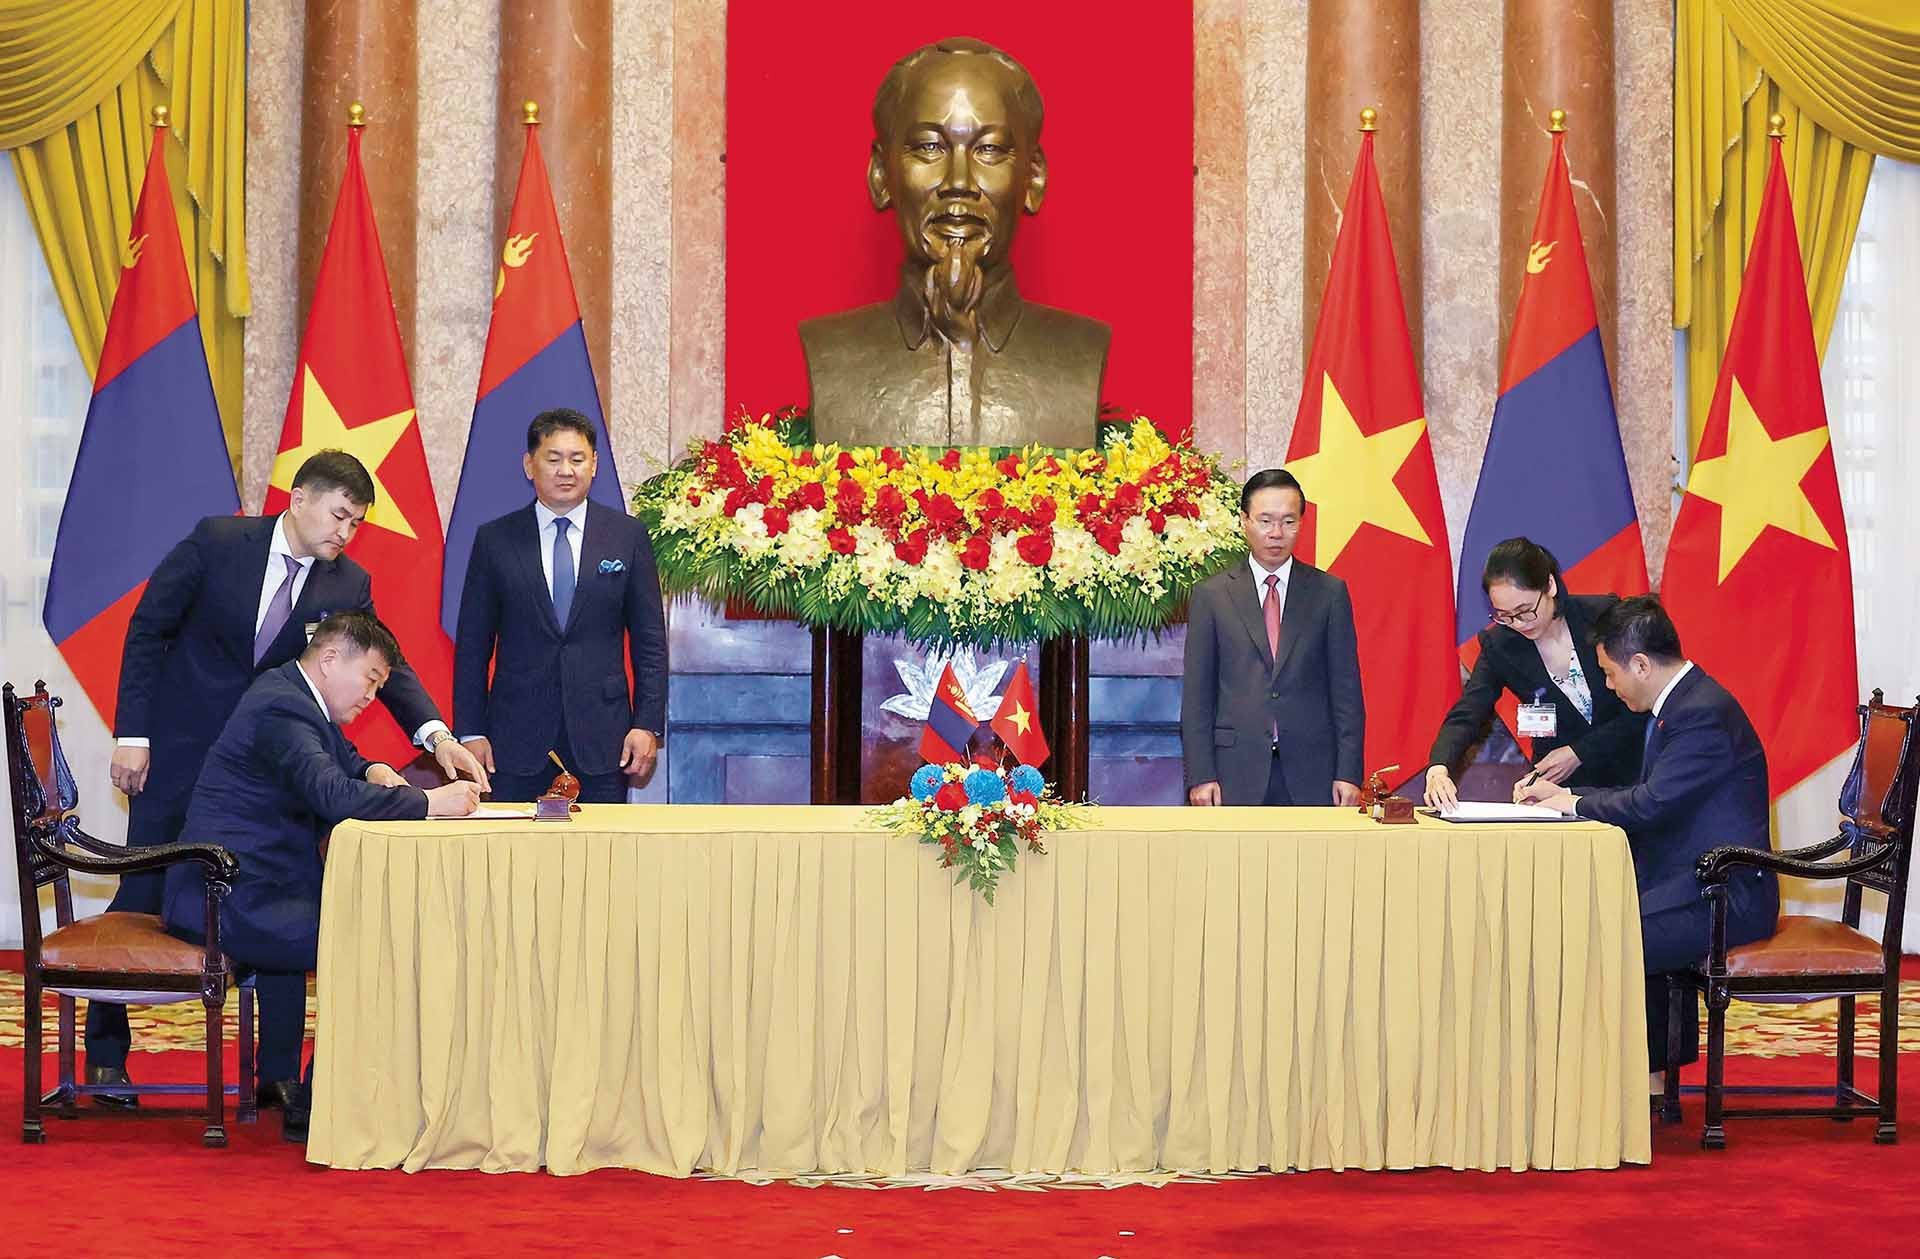 Chủ tịch nước Võ Văn Thưởng và Tổng thống Mông Cổ Ukhnaagiin Khurelsukh chứng kiến lễ ký văn kiện hợp tác giữa hai bên, ngày 1/11. (Nguồn: TTXVN)